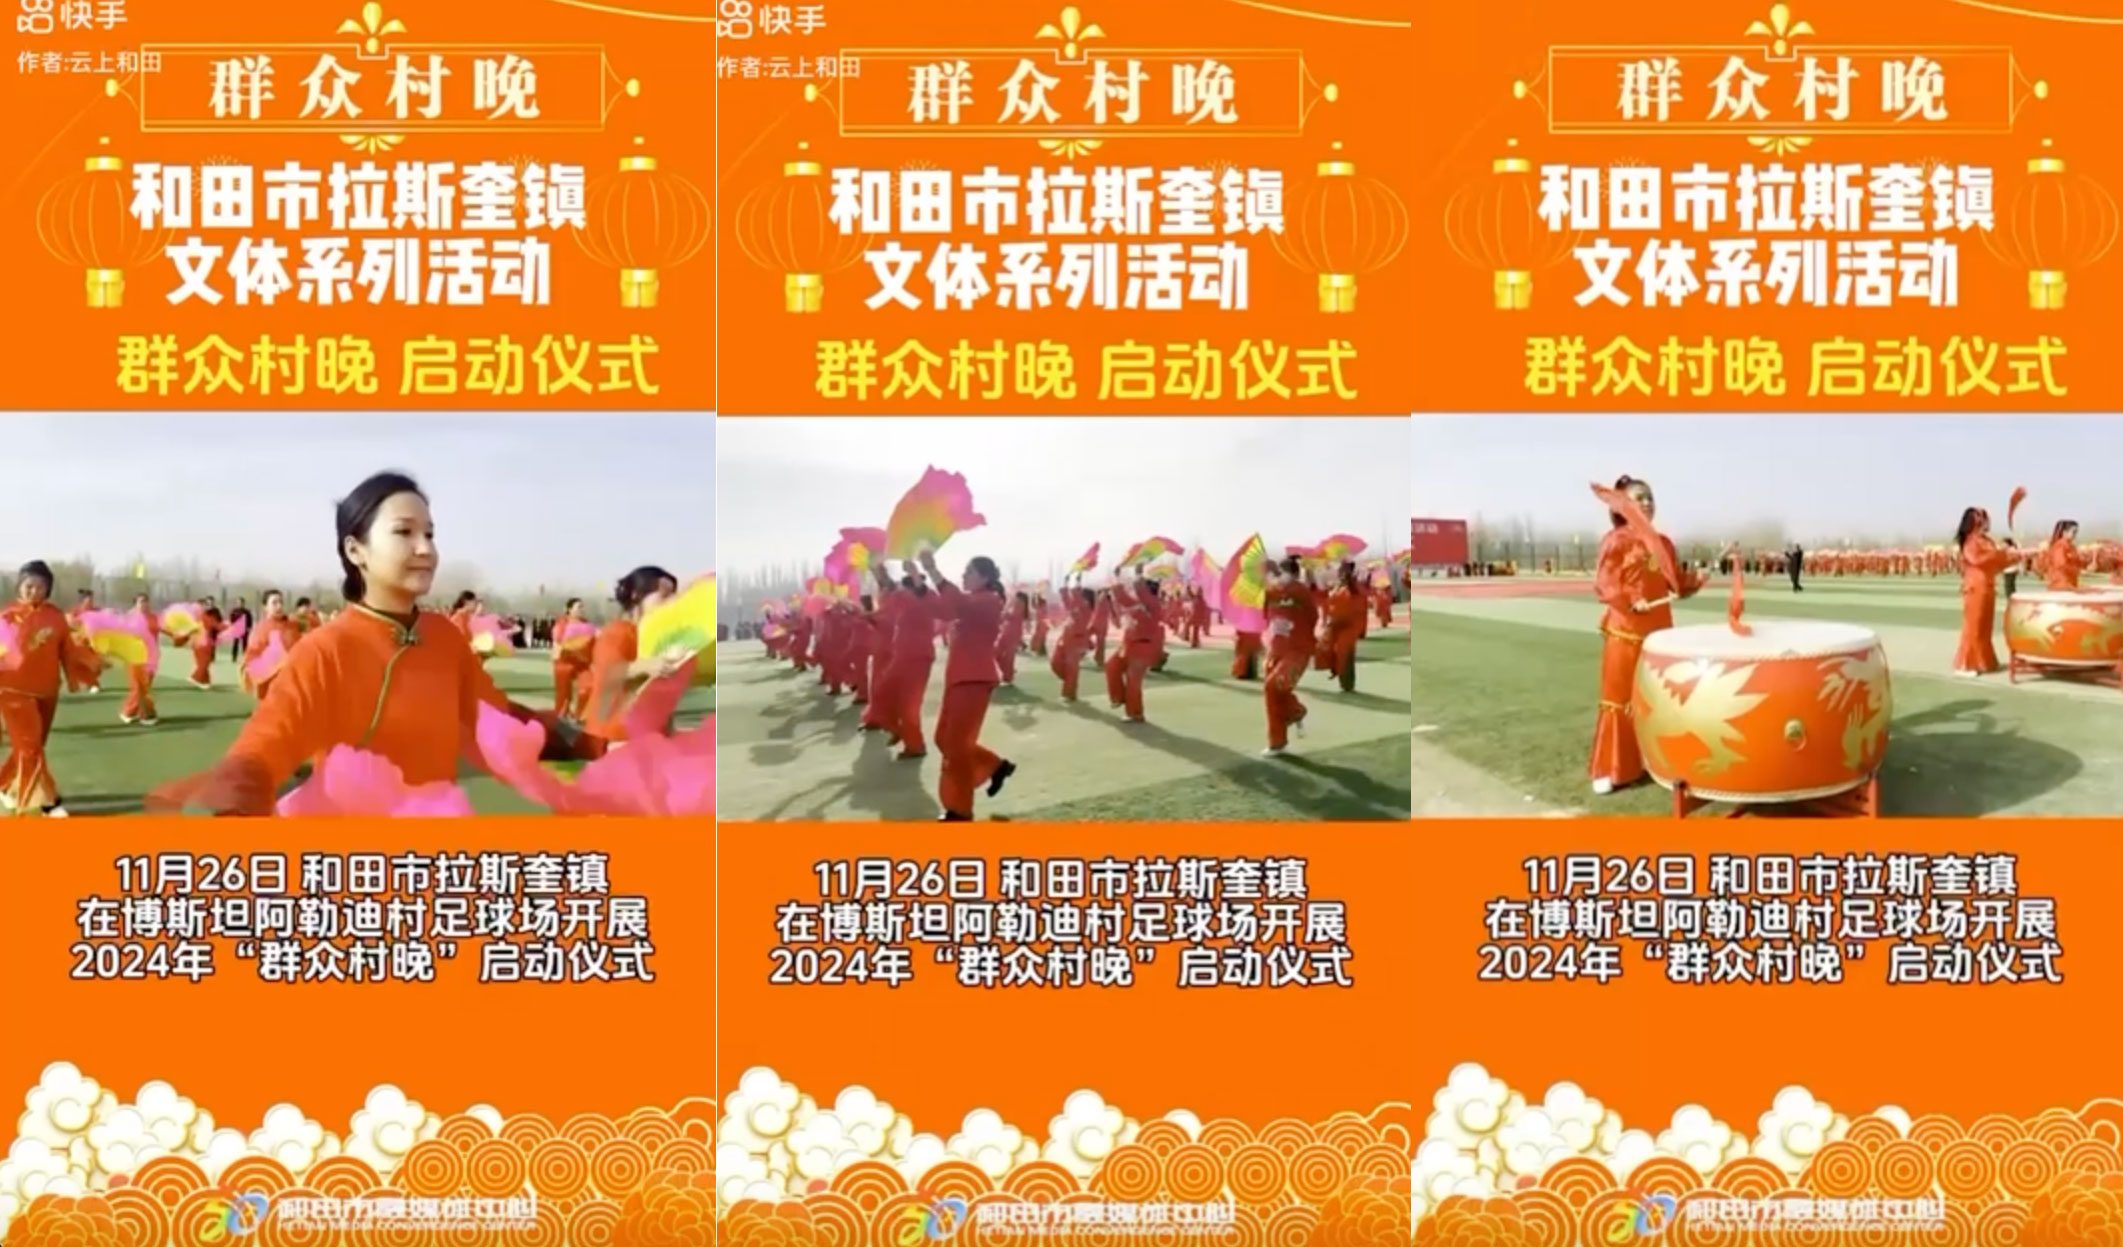 11月26日，新疆和田拉斯奎镇“博斯坦阿勒迪村足球场”上，2024“群众村晚”举办启动仪式。数百名维族妇女穿着大红衣、跳扇子舞、打大鼓，背景则是锣鼓喧年的汉族农历年节歌曲。（迪里夏提提供、快手视频截图）